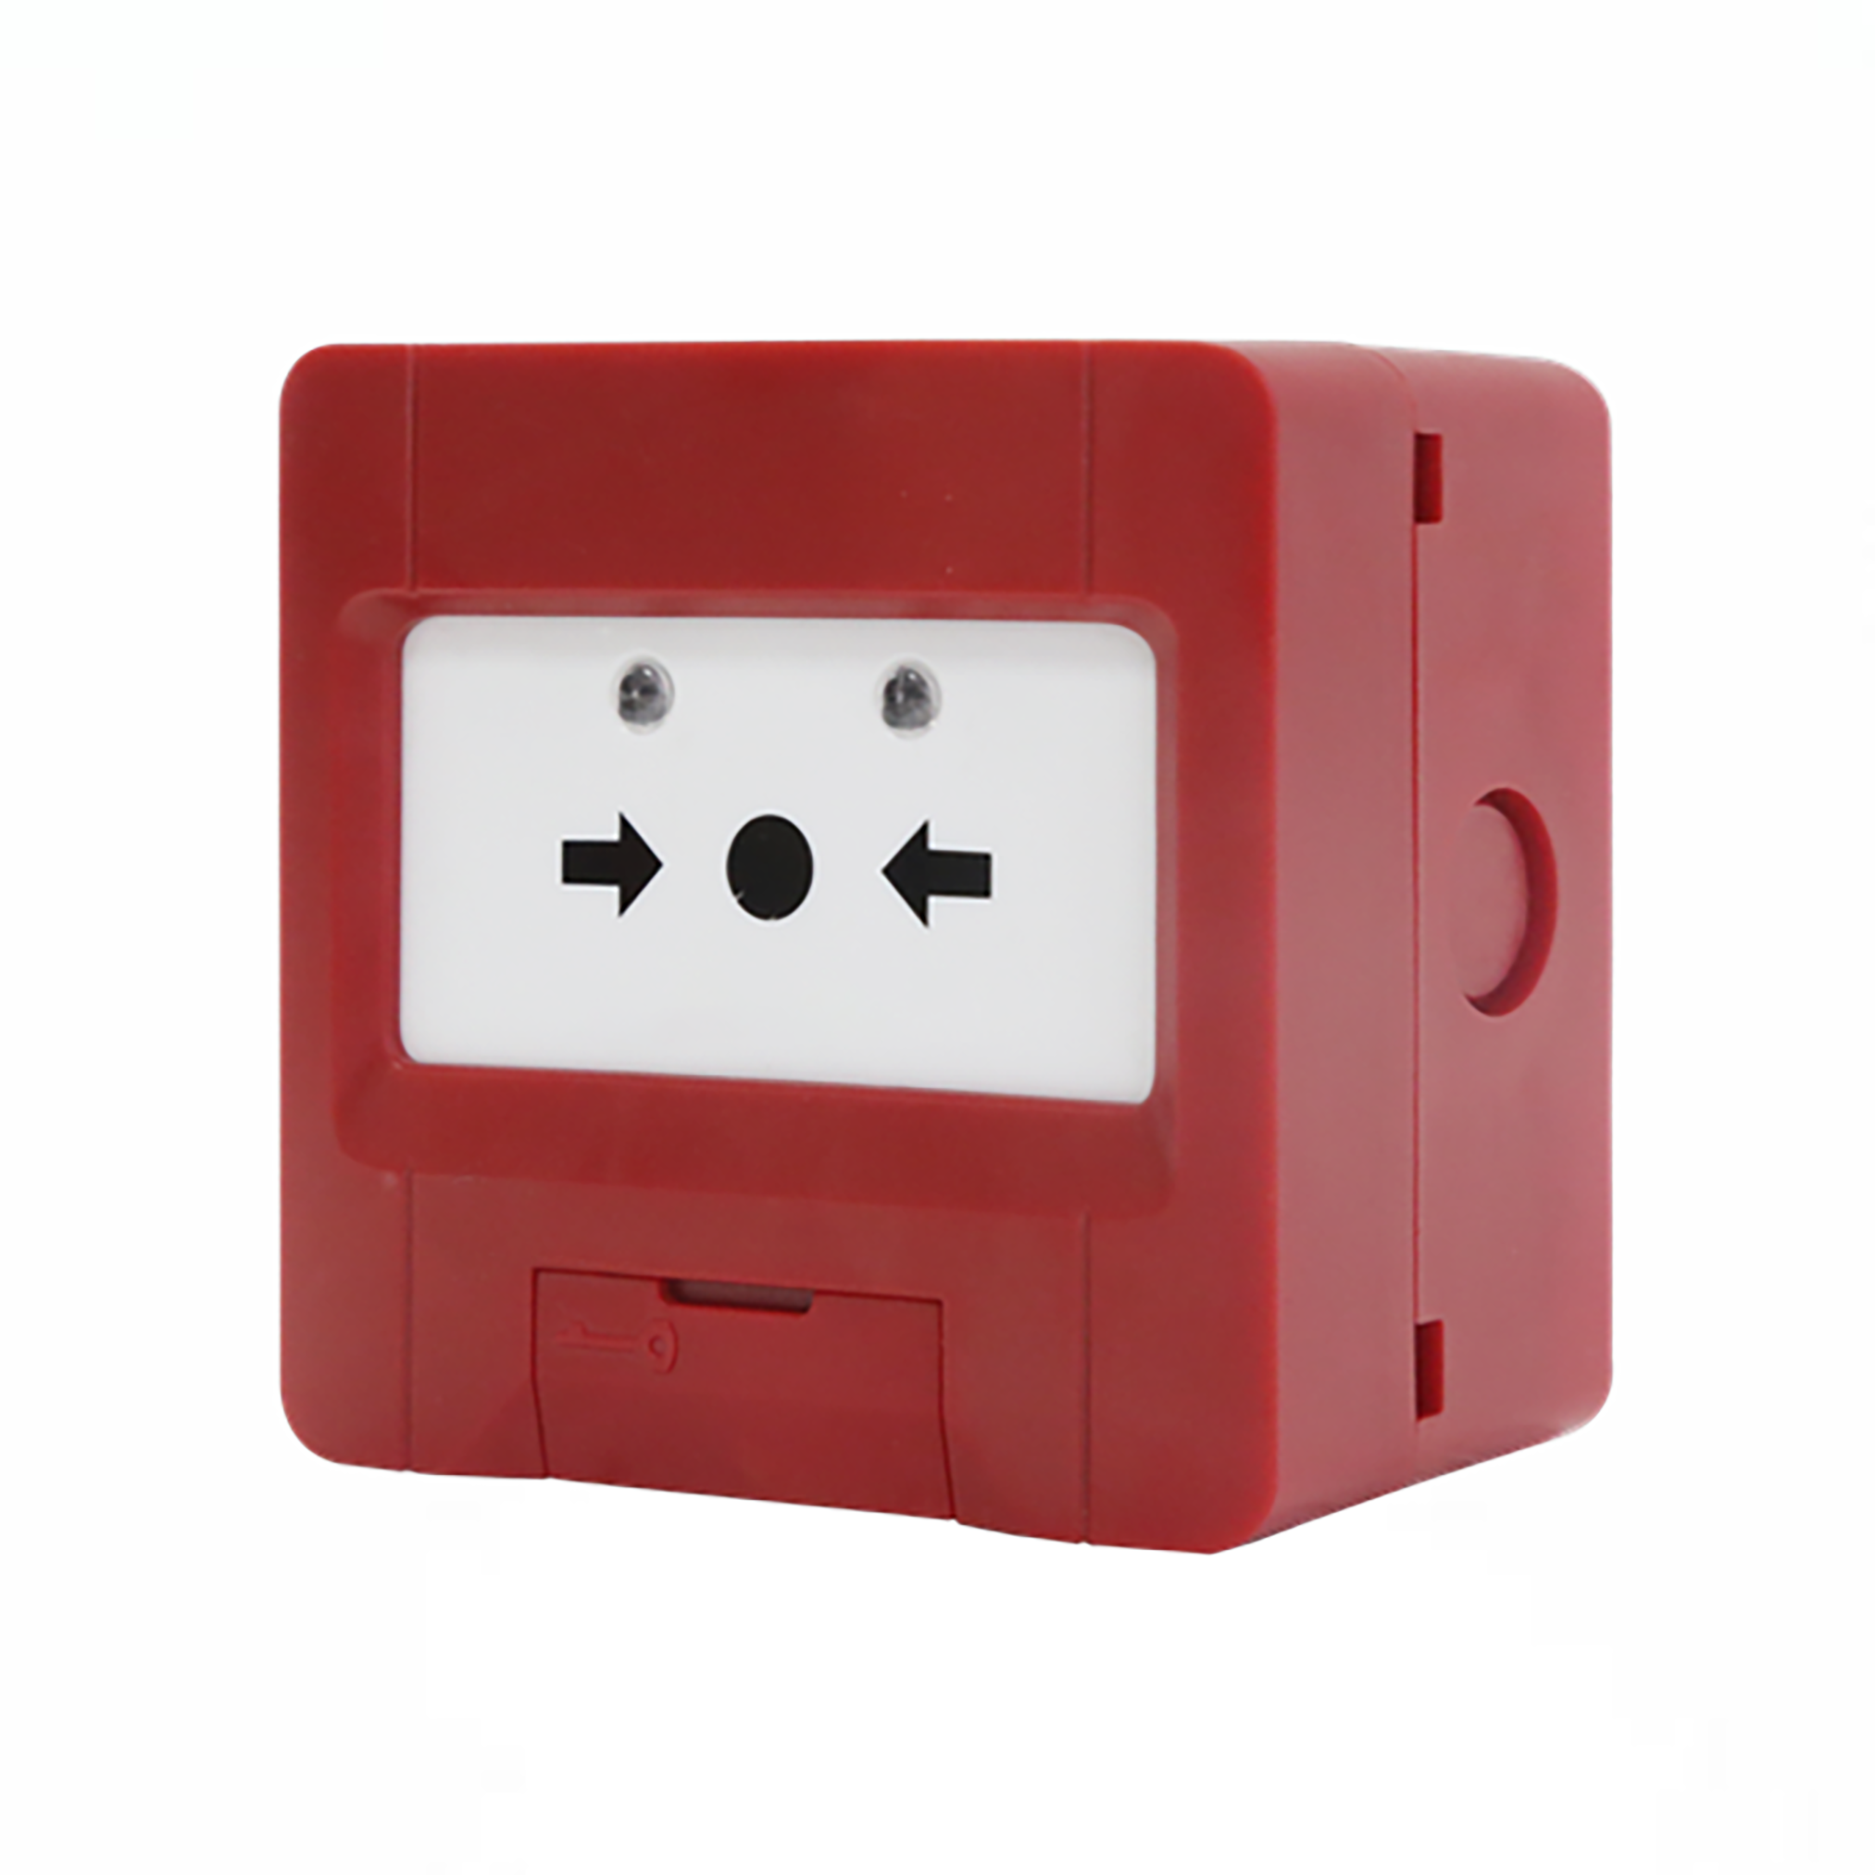 JBF4123A Accés ràpid d'emergència: el botó d'incendis permet l'activació còmoda i immediata dels hidrants